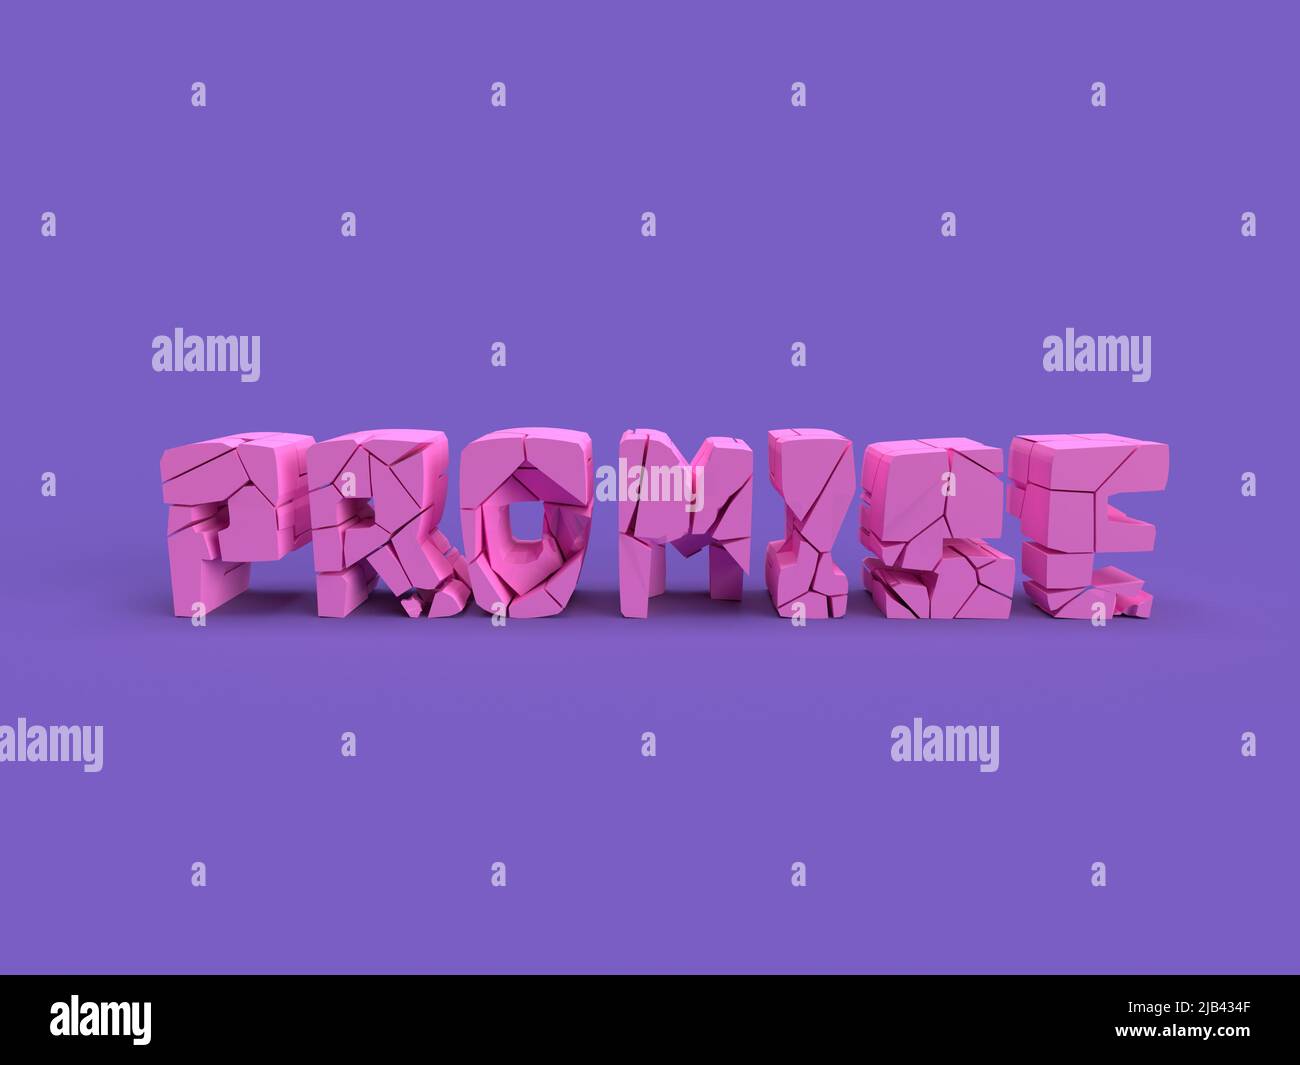 broken proomise - 3d illustration   ,cracked word Stock Photo